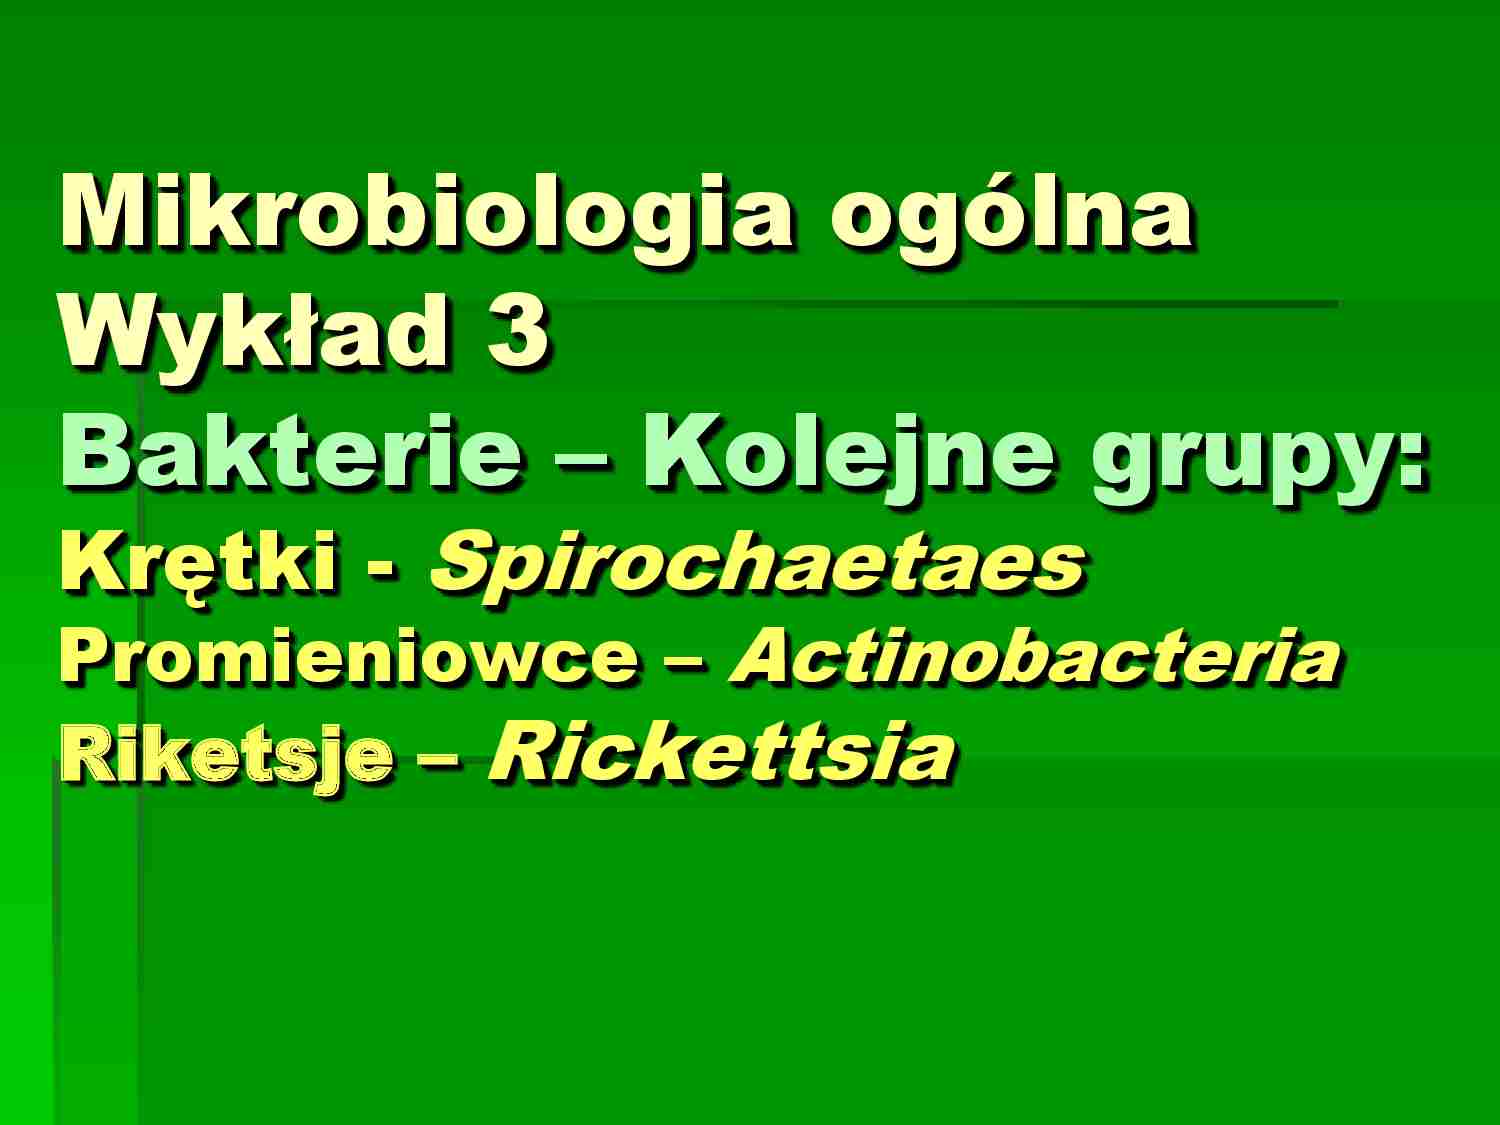 Mikrobiologia - wykład 3 - Bakterie  - strona 1